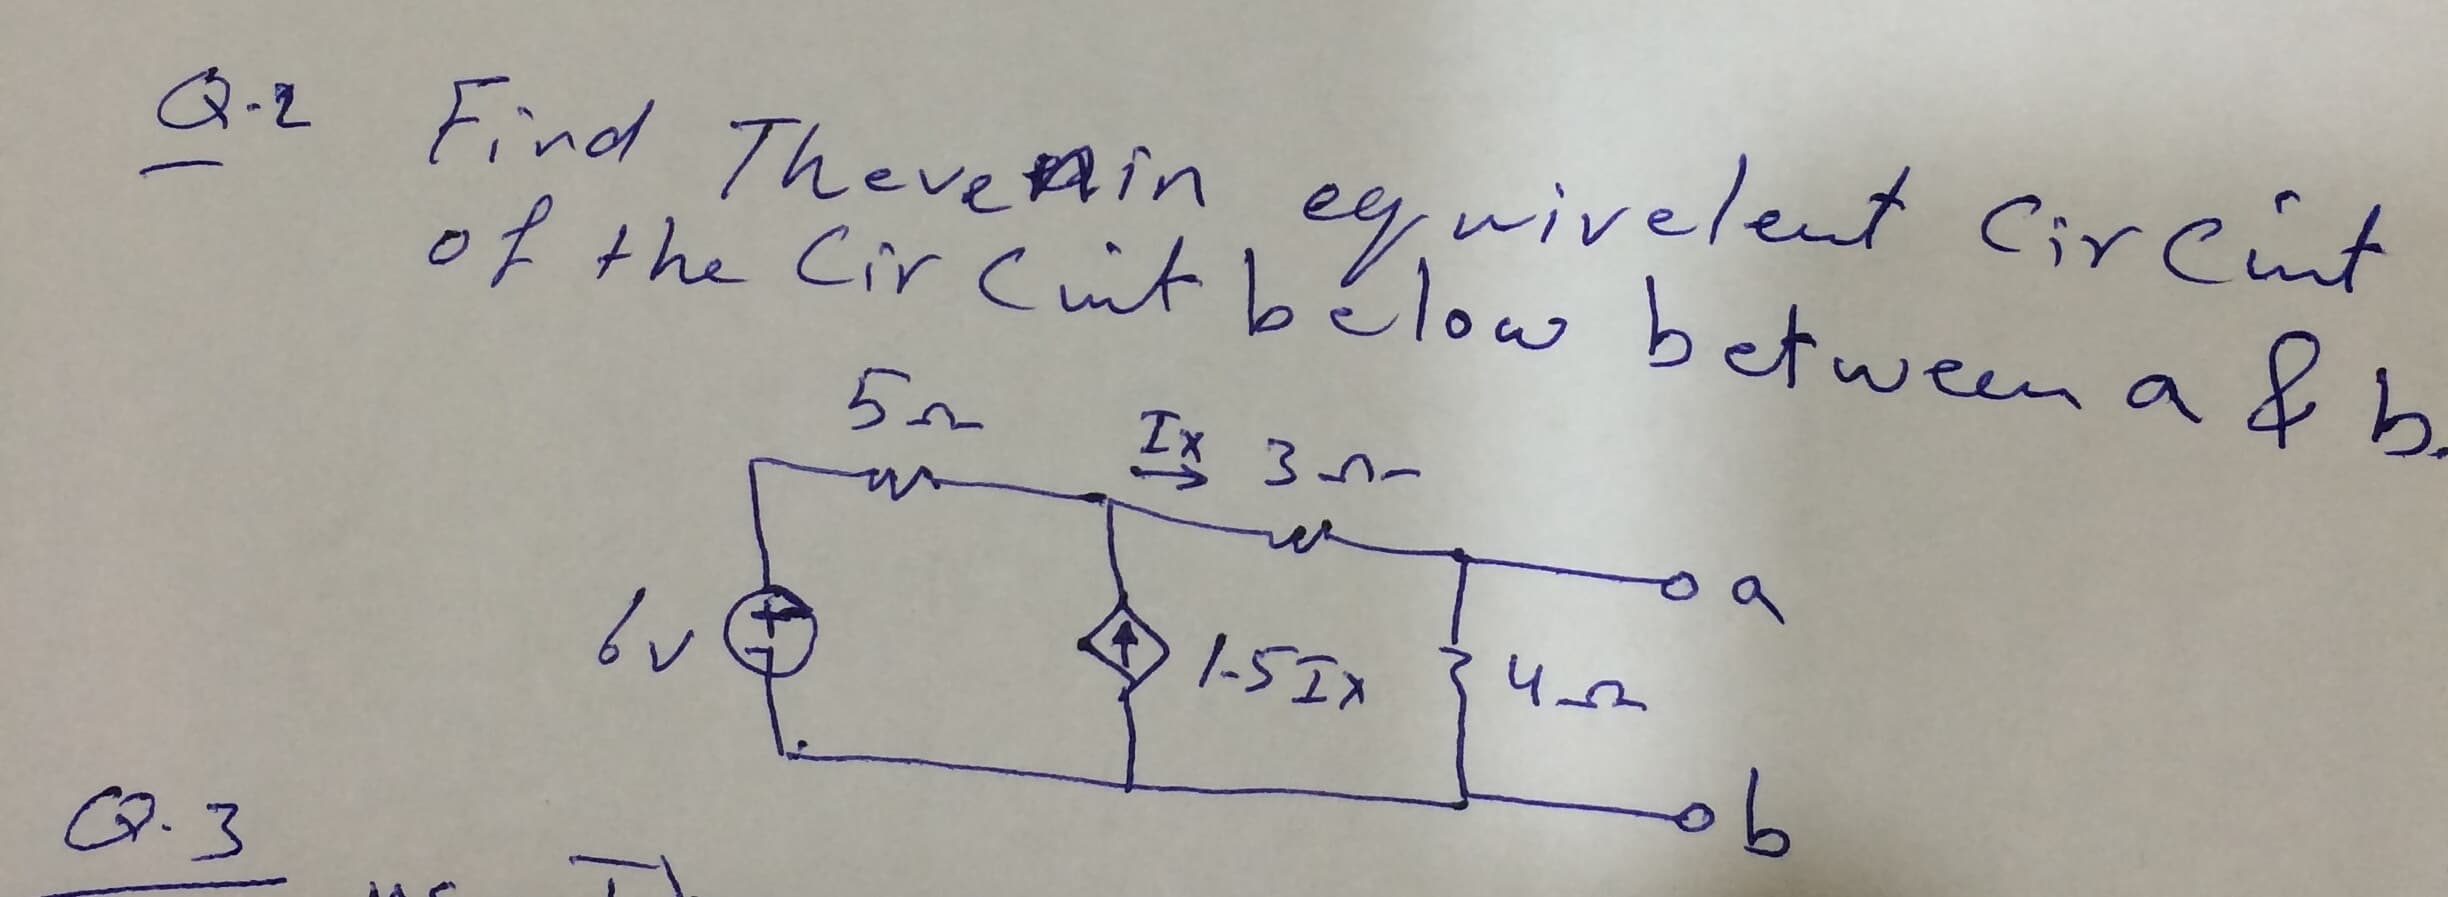 Q.2 Find TheveAin ey, wivelent CirCint
ee,wivelent Cirent
of the Cir Cit bélow between a & b
4 I-5Ix
.3
